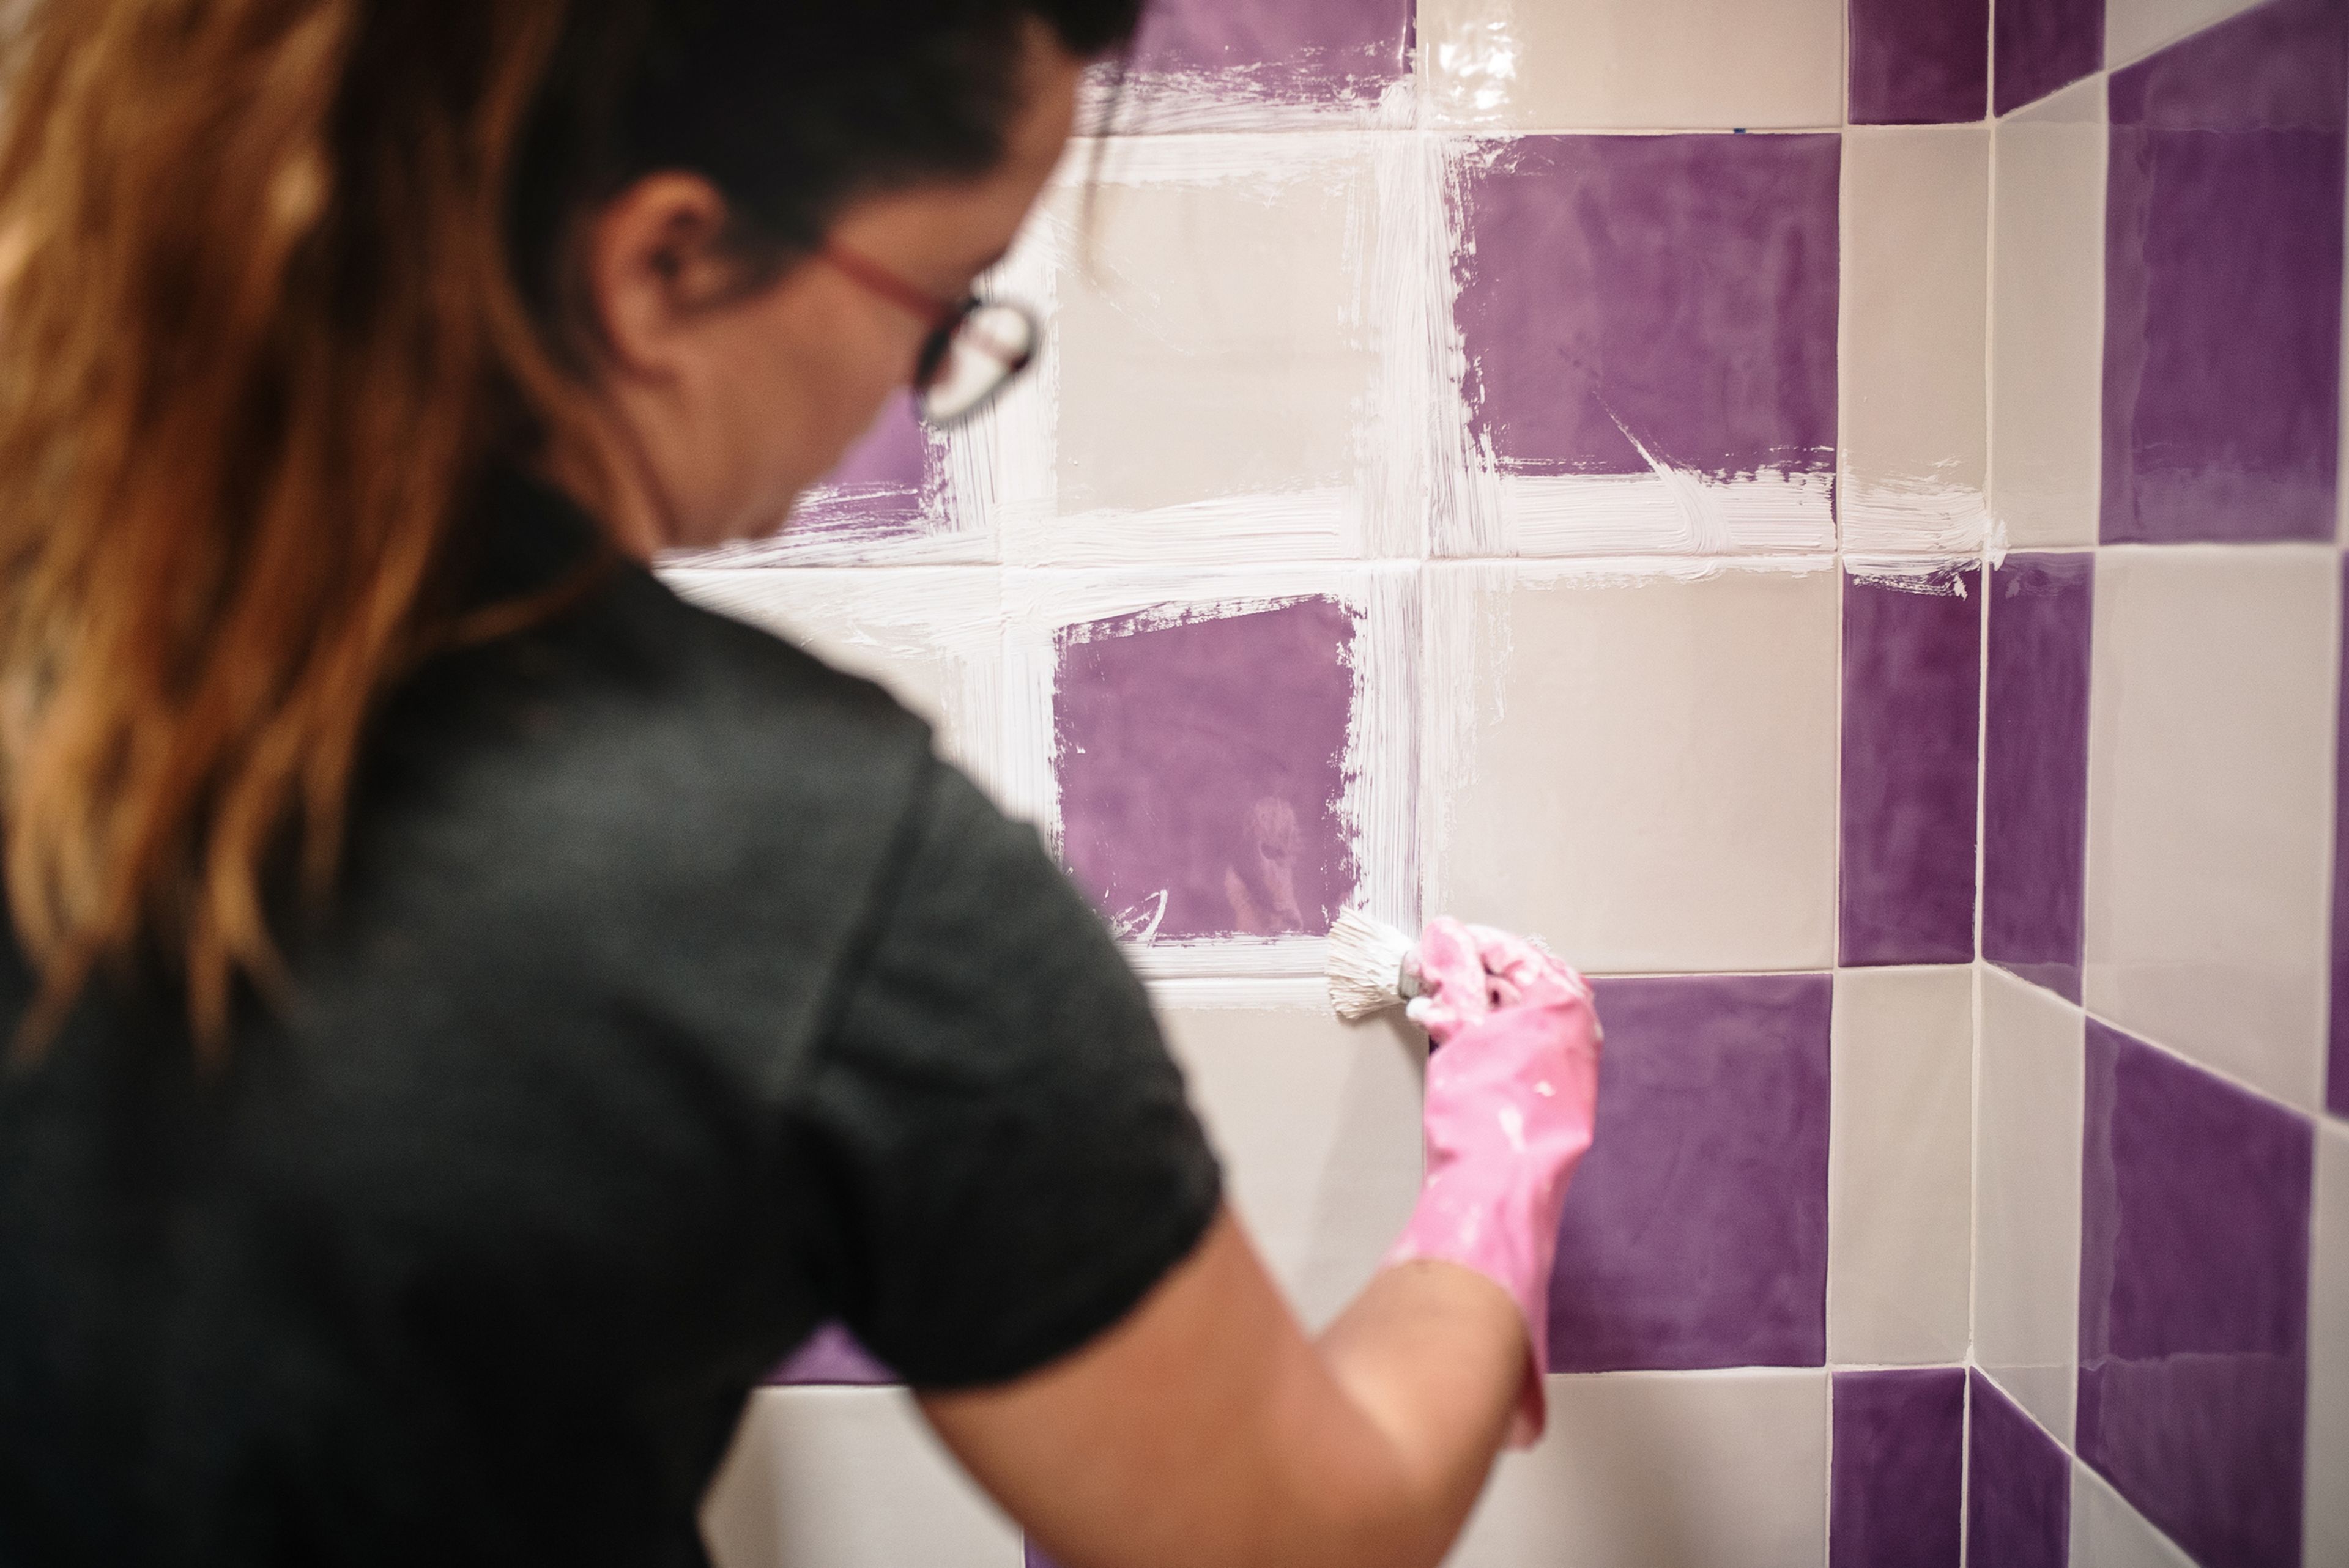 Una mujer arregla los azulejos de casa.